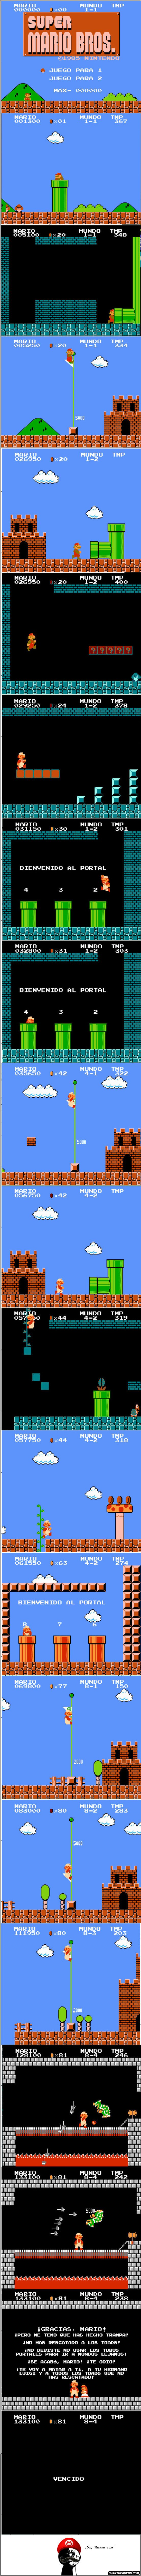 Oh_god_why - Un final malo para Mario